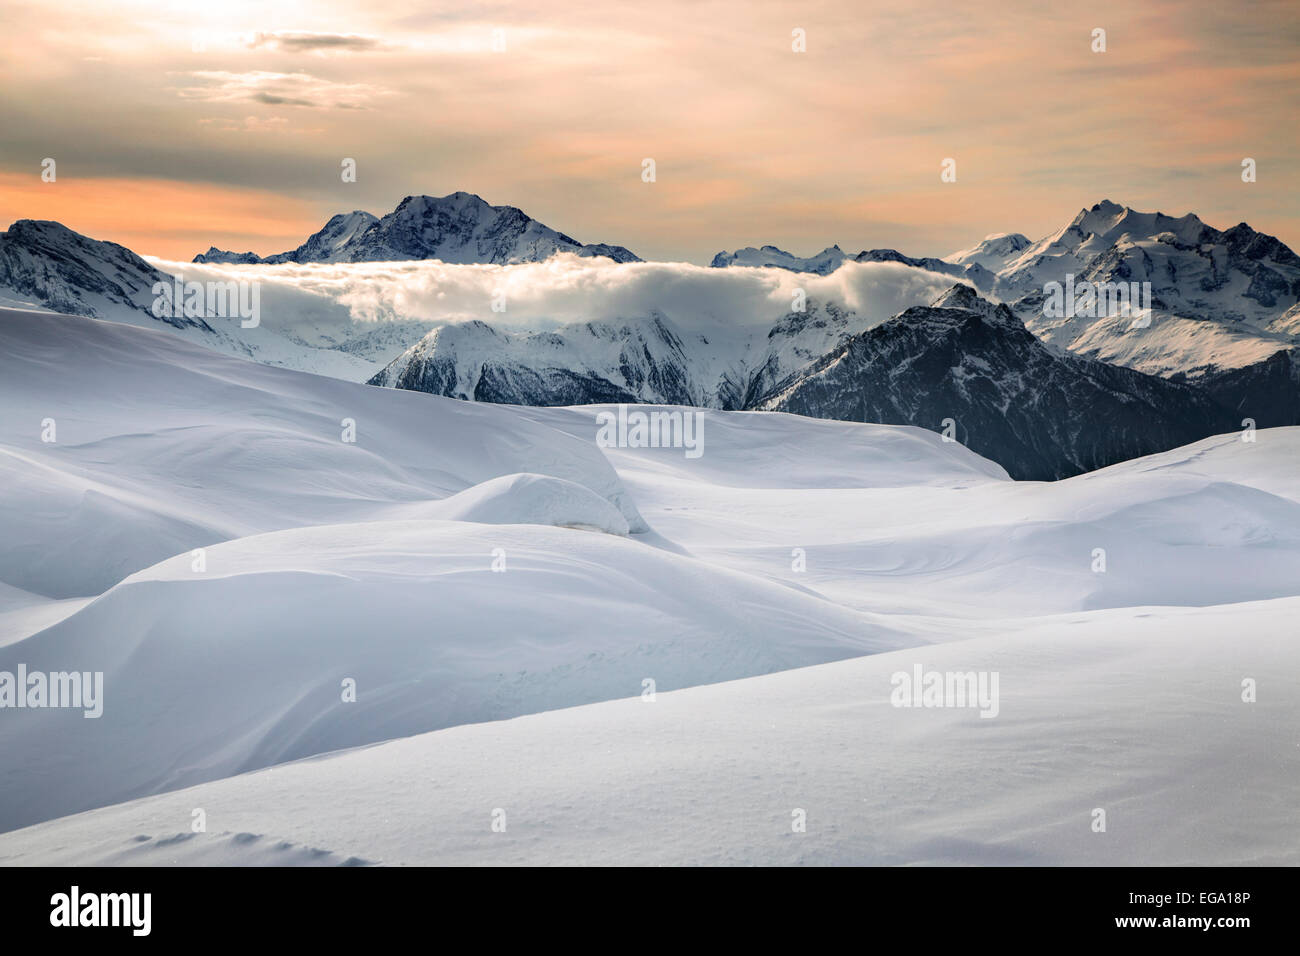 Tramonto sulla coperta di neve montagne Alpine in inverno nelle Alpi Svizzere a Wallis / Valais, Svizzera Foto Stock